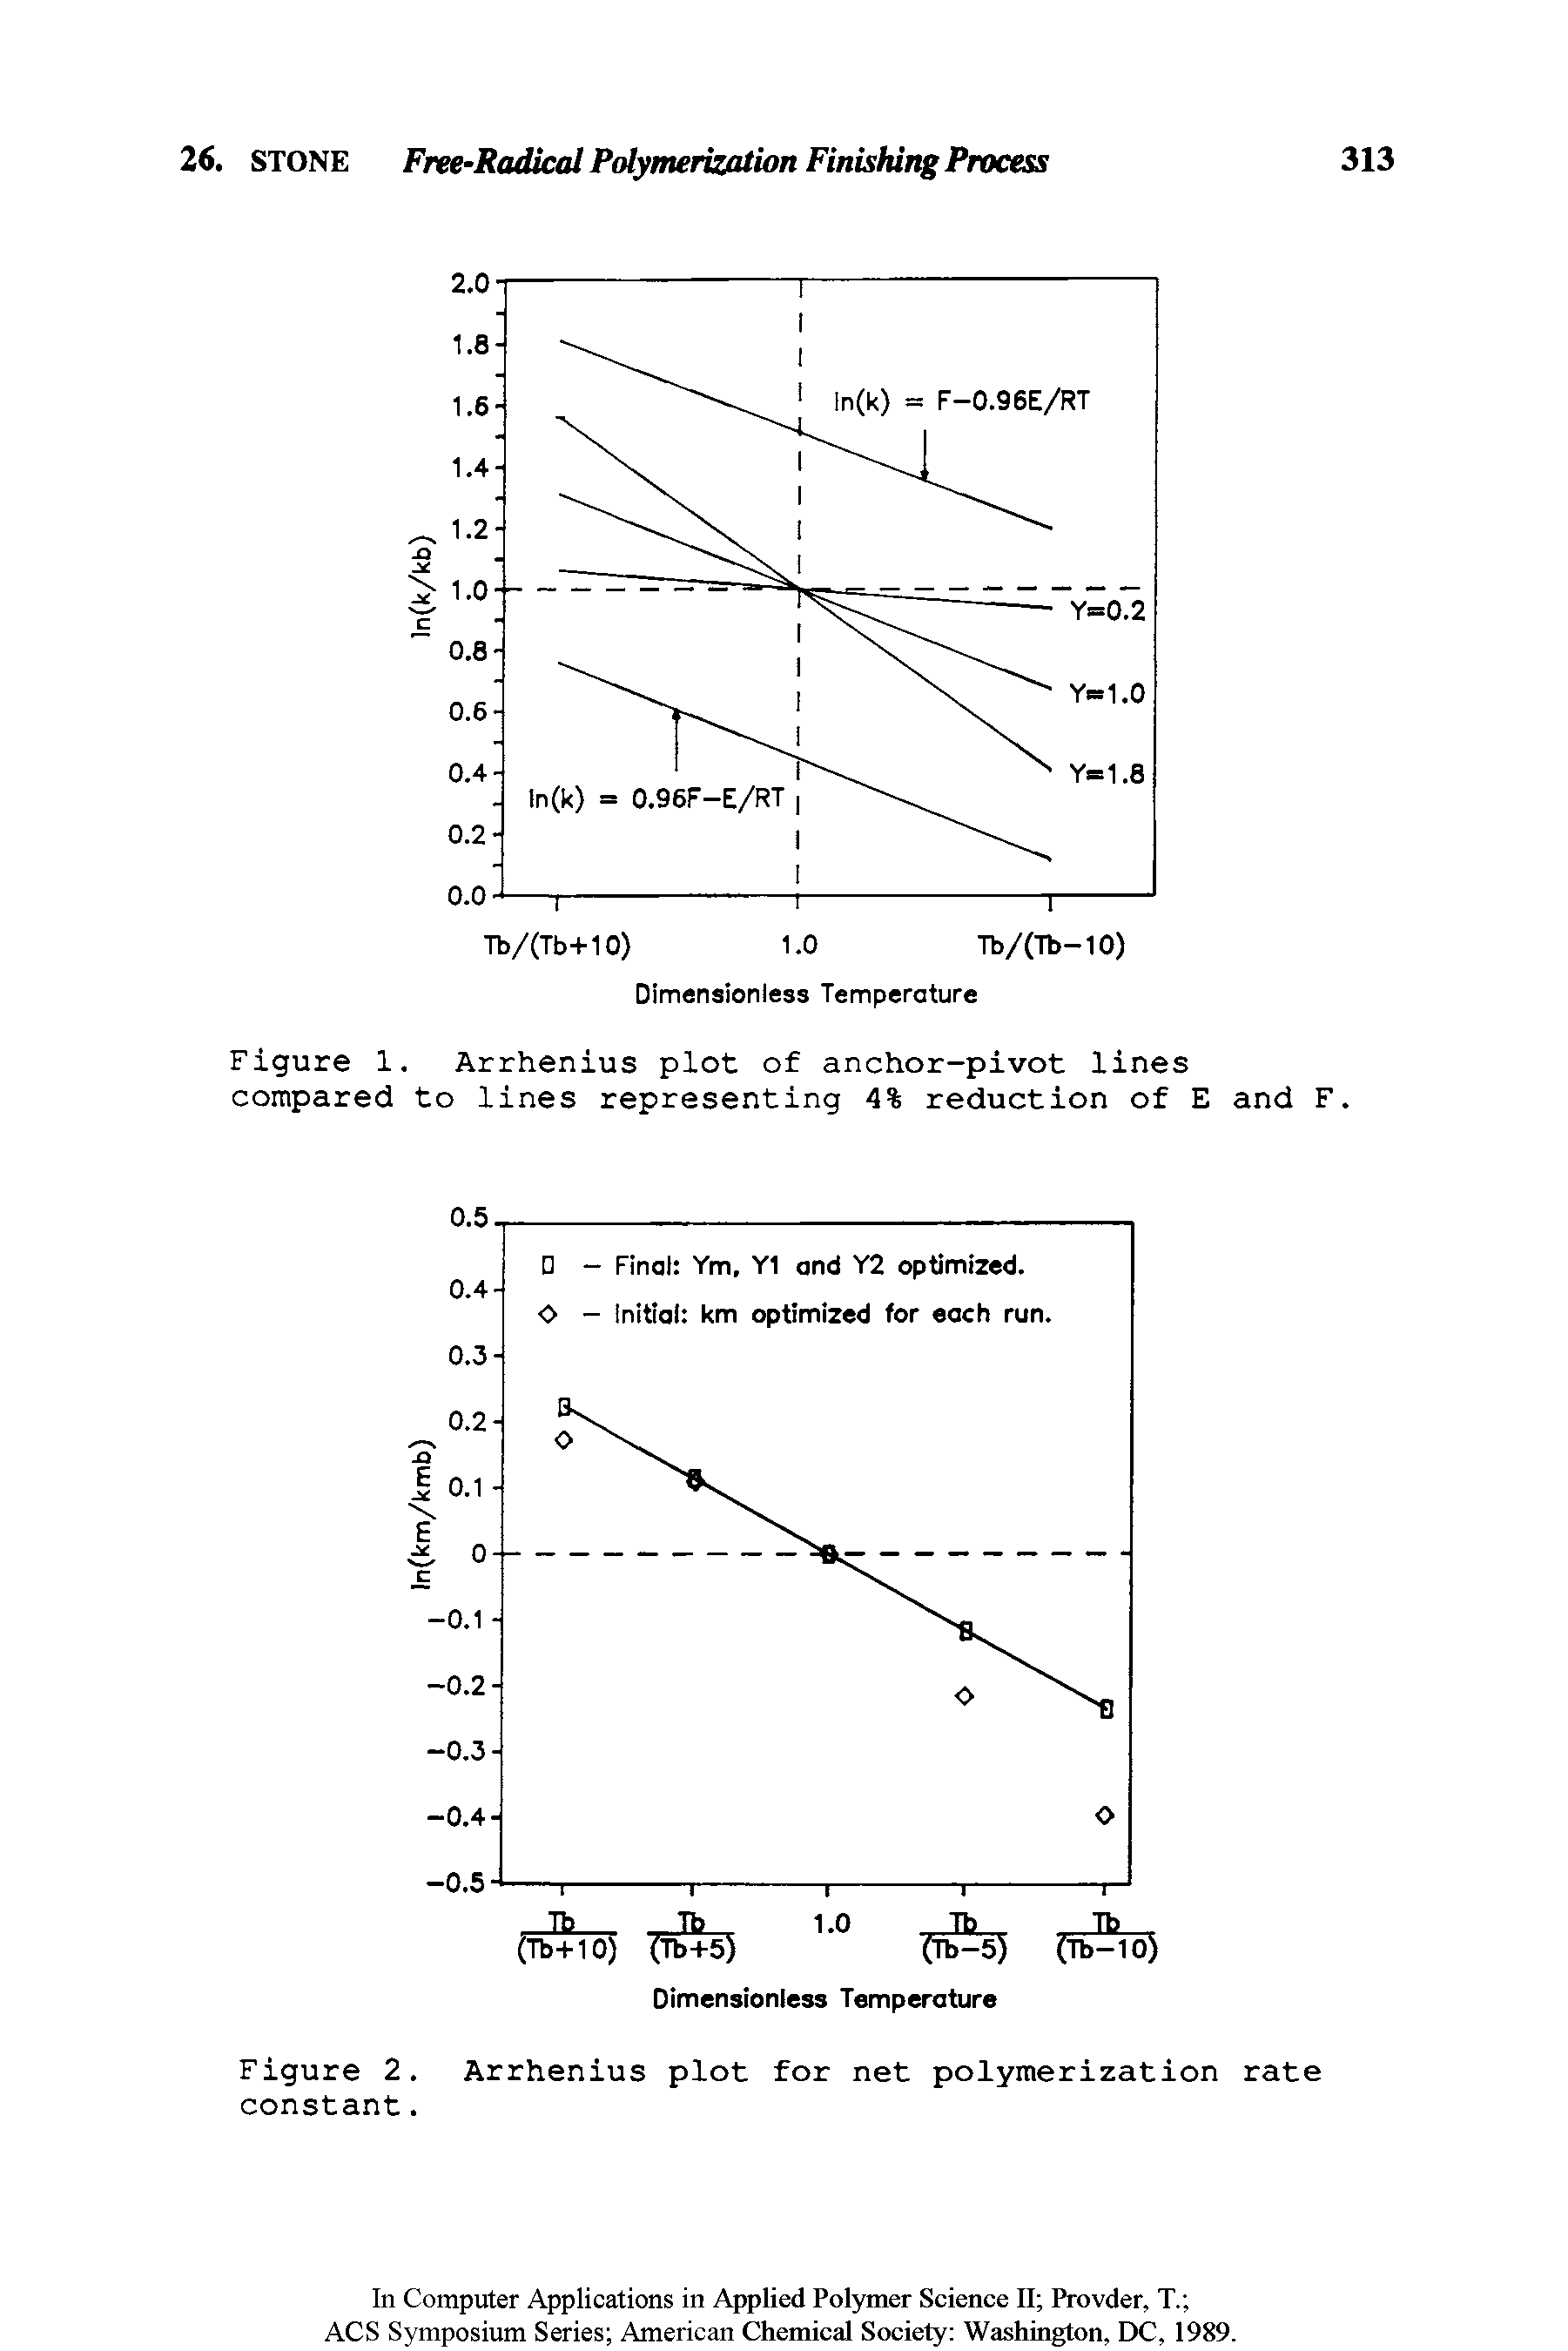 Figure 2. Arrhenius plot for net polymerization rate constant.